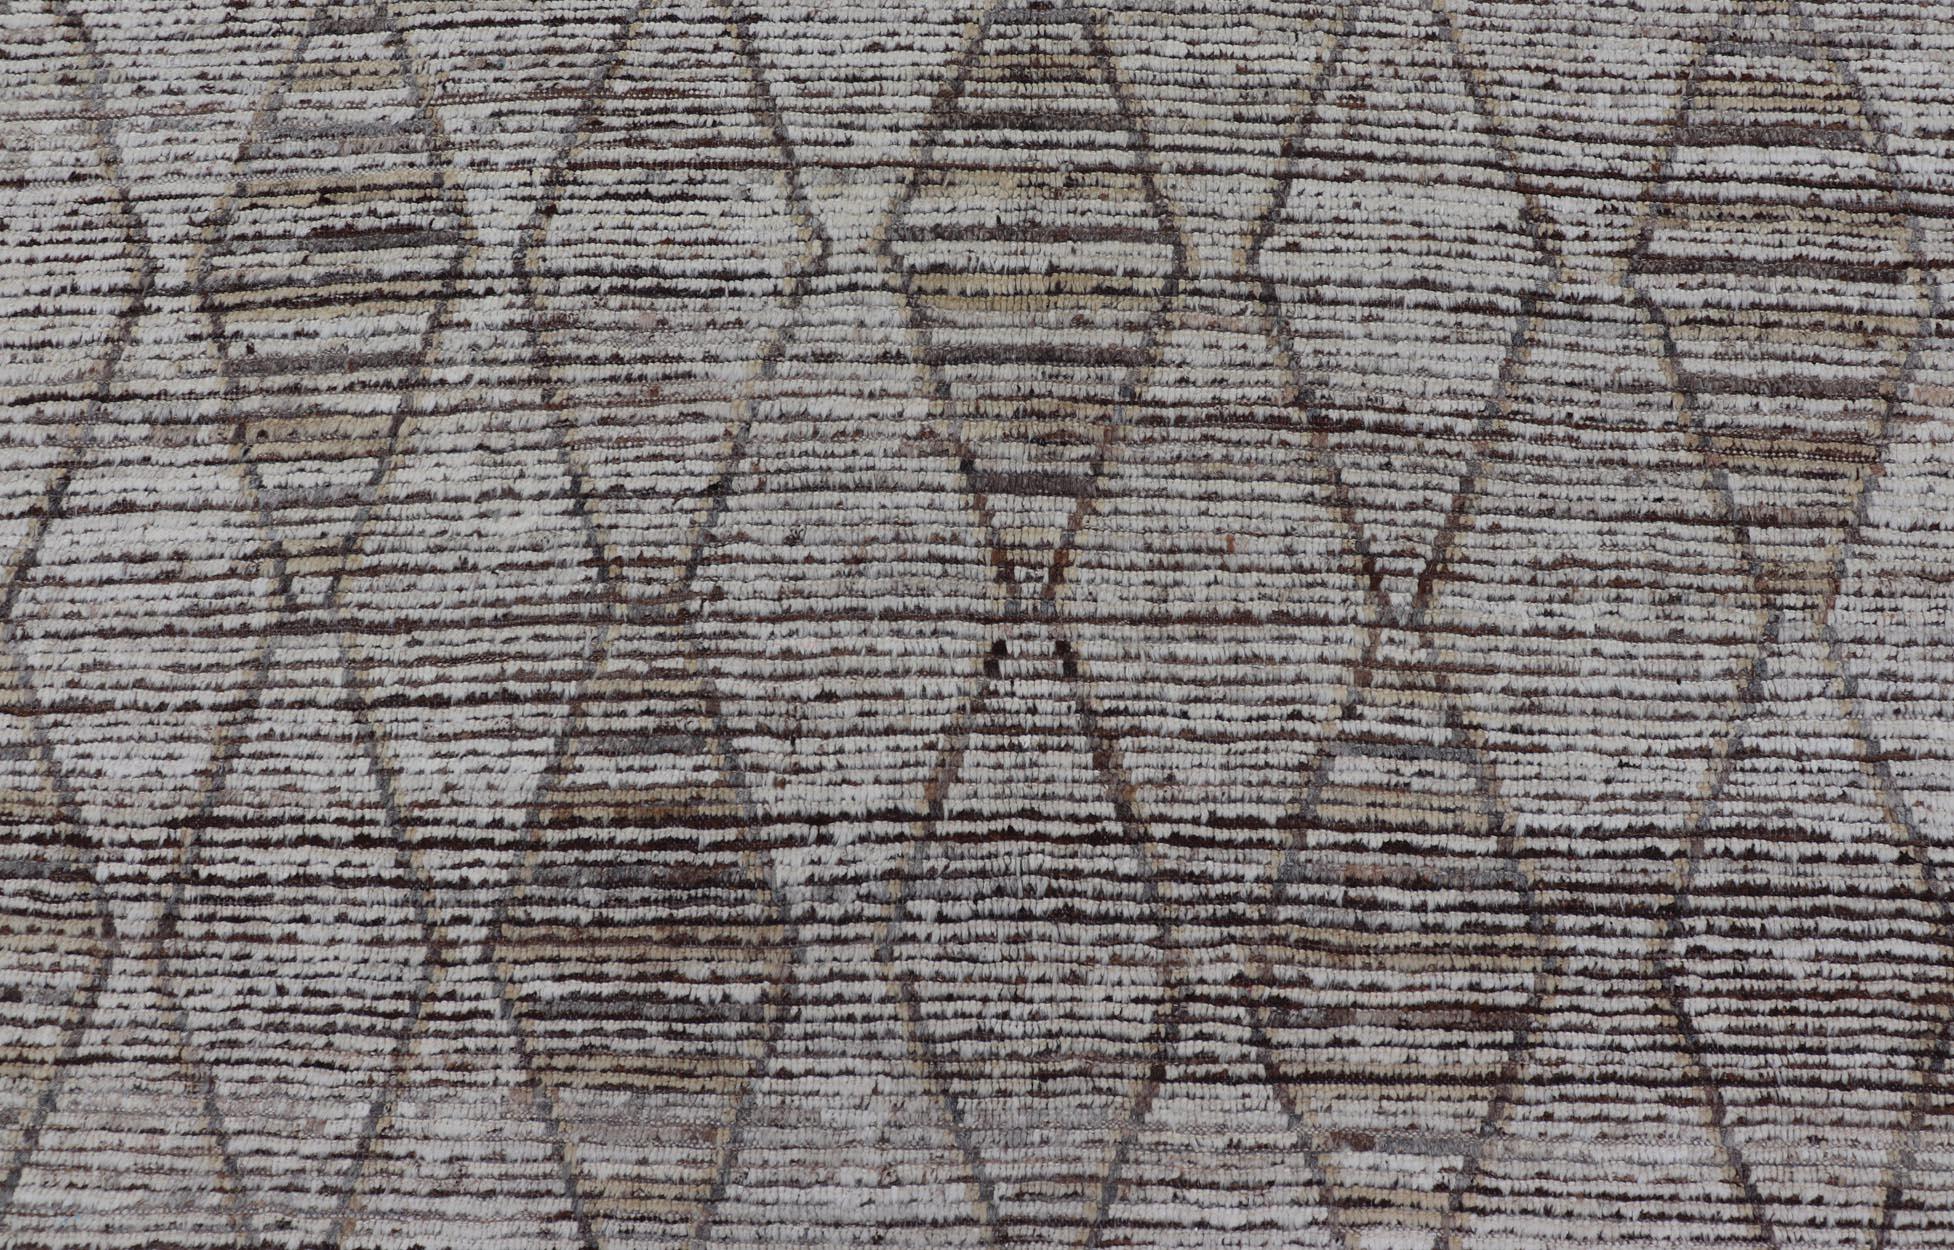 Dieser moderne, lässige Stammesteppich wurde von Hand geknüpft. Der Teppich zeichnet sich durch ein modernes, subgeometrisches Rautendesign in erdigen Tönen aus, das ihn zu einer Vielzahl von klassischen, modernen, lässigen und minimalistischen